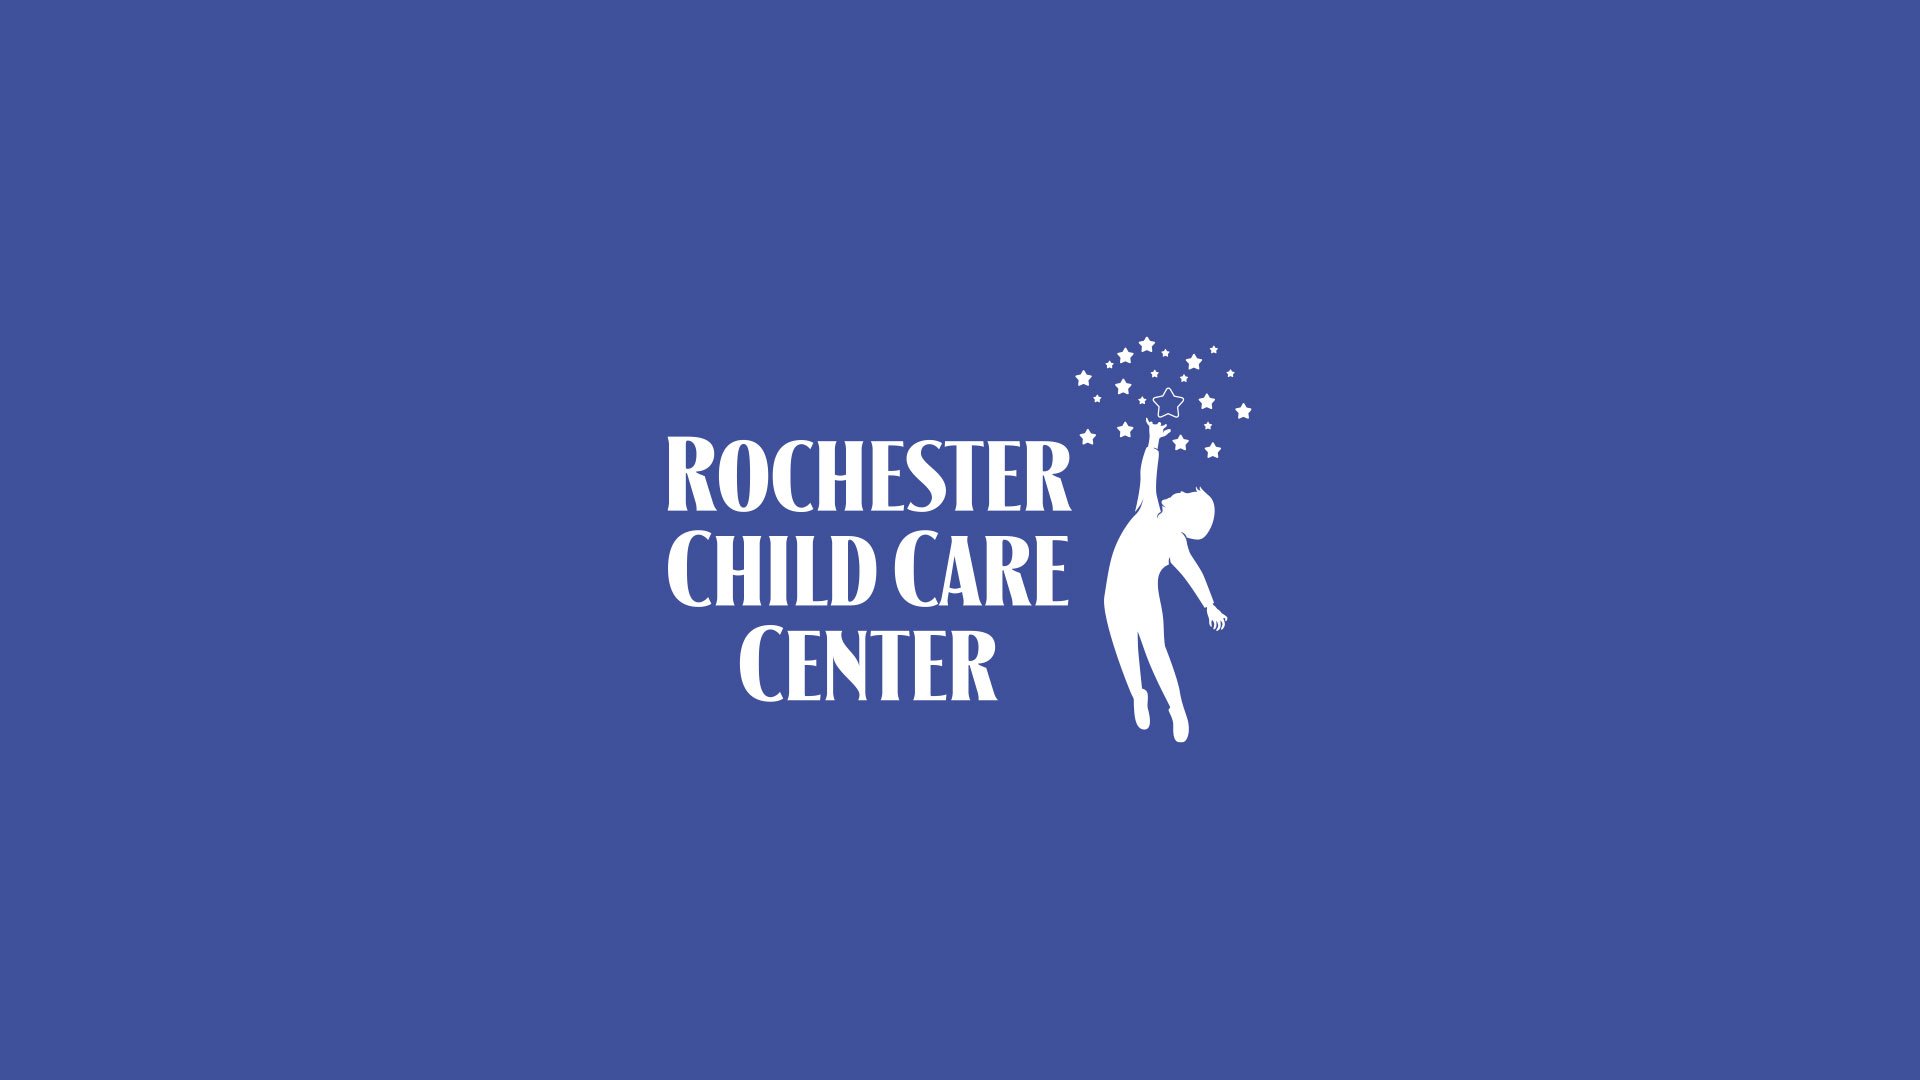 Rochester-Child-Care-Center website design.jpg